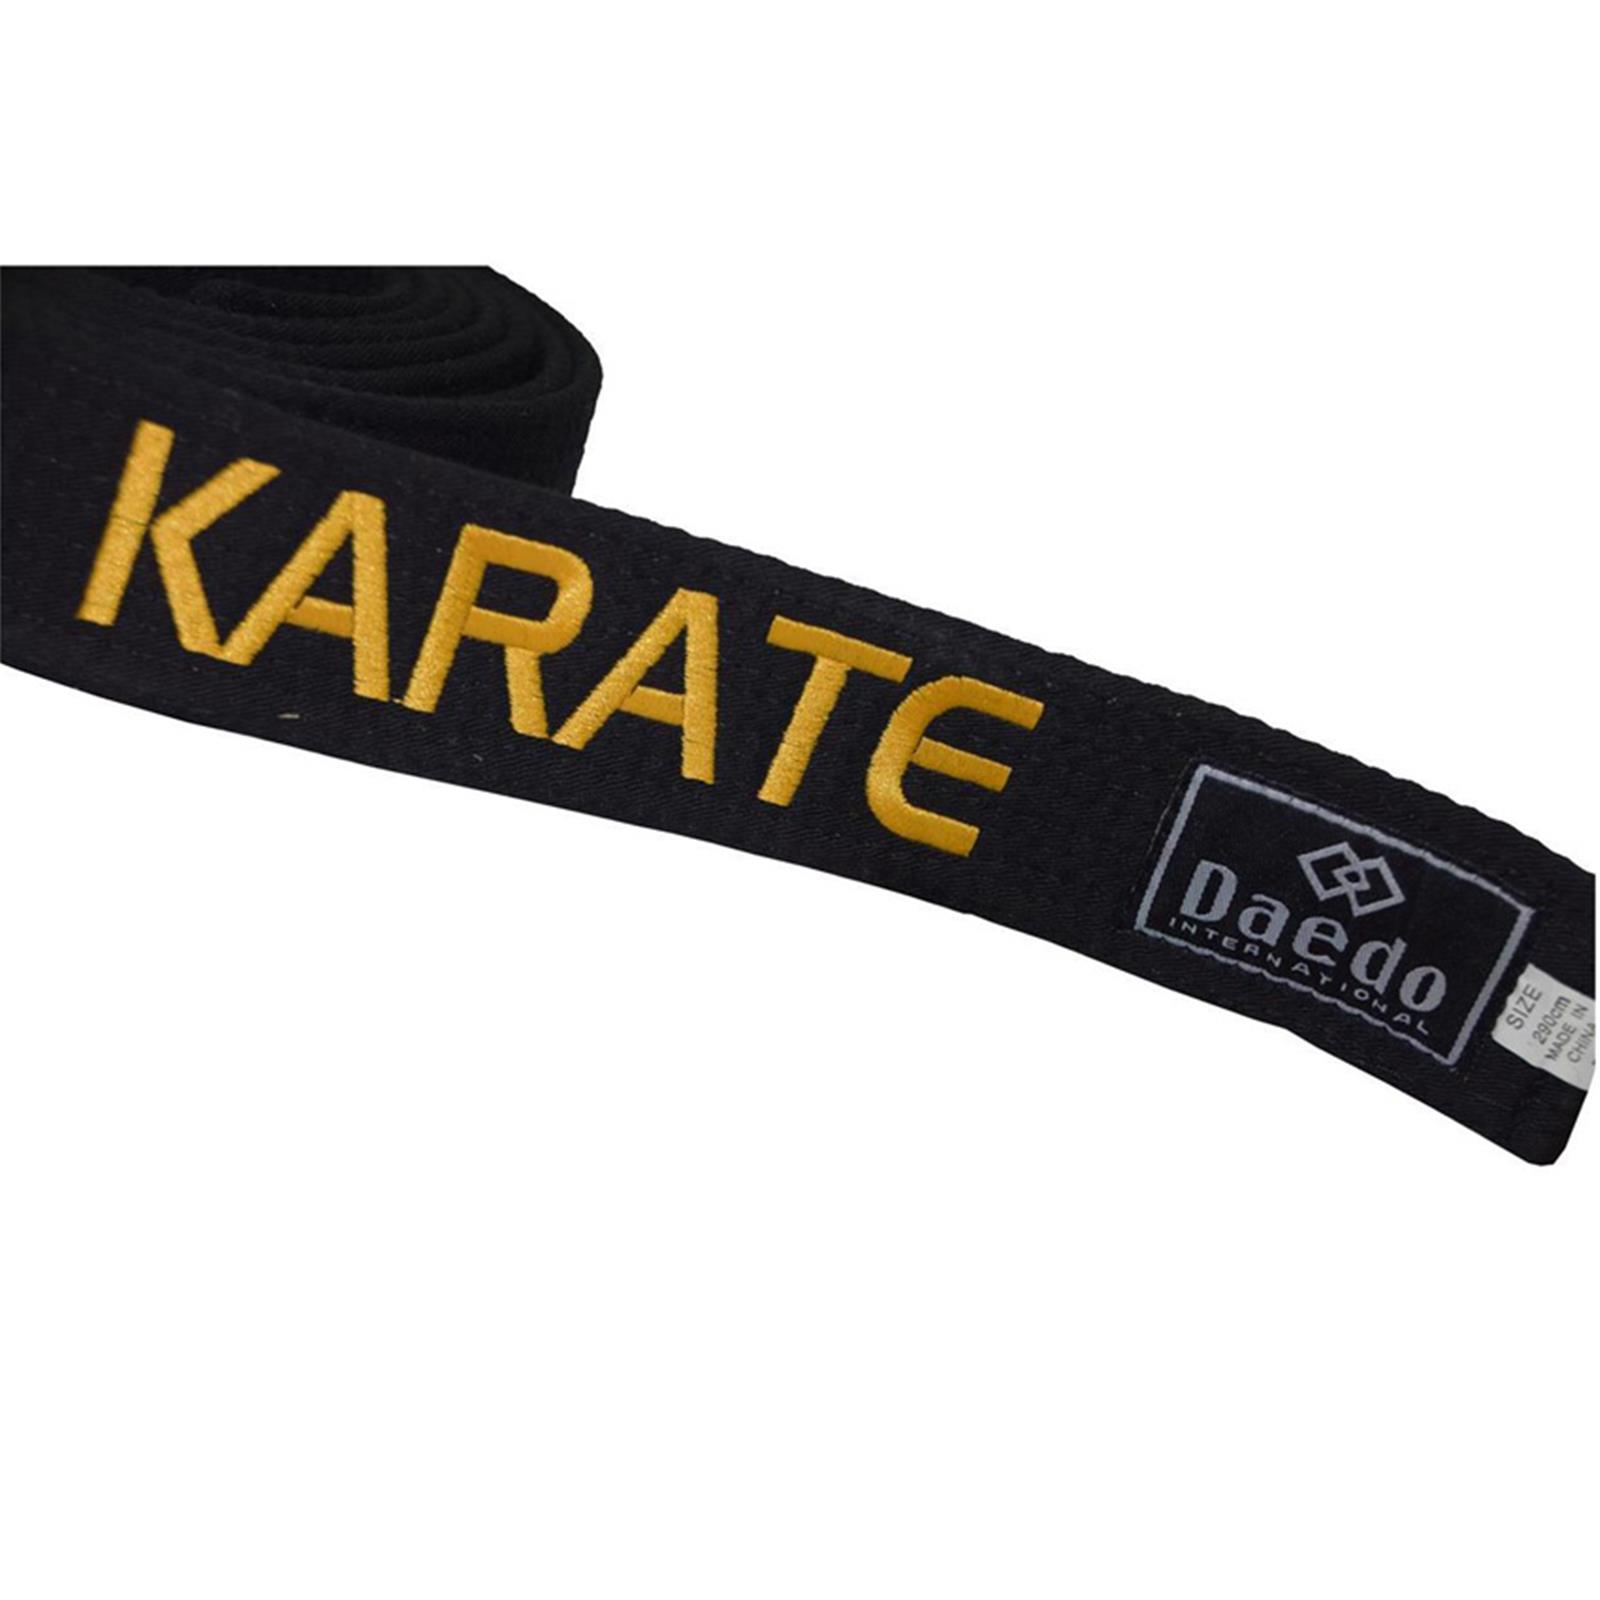 Dae Do Cintura Nera Karate ricamata Oro personalizzata (ALTEZZA 4,5 CM - Tag. 3° CM  260)